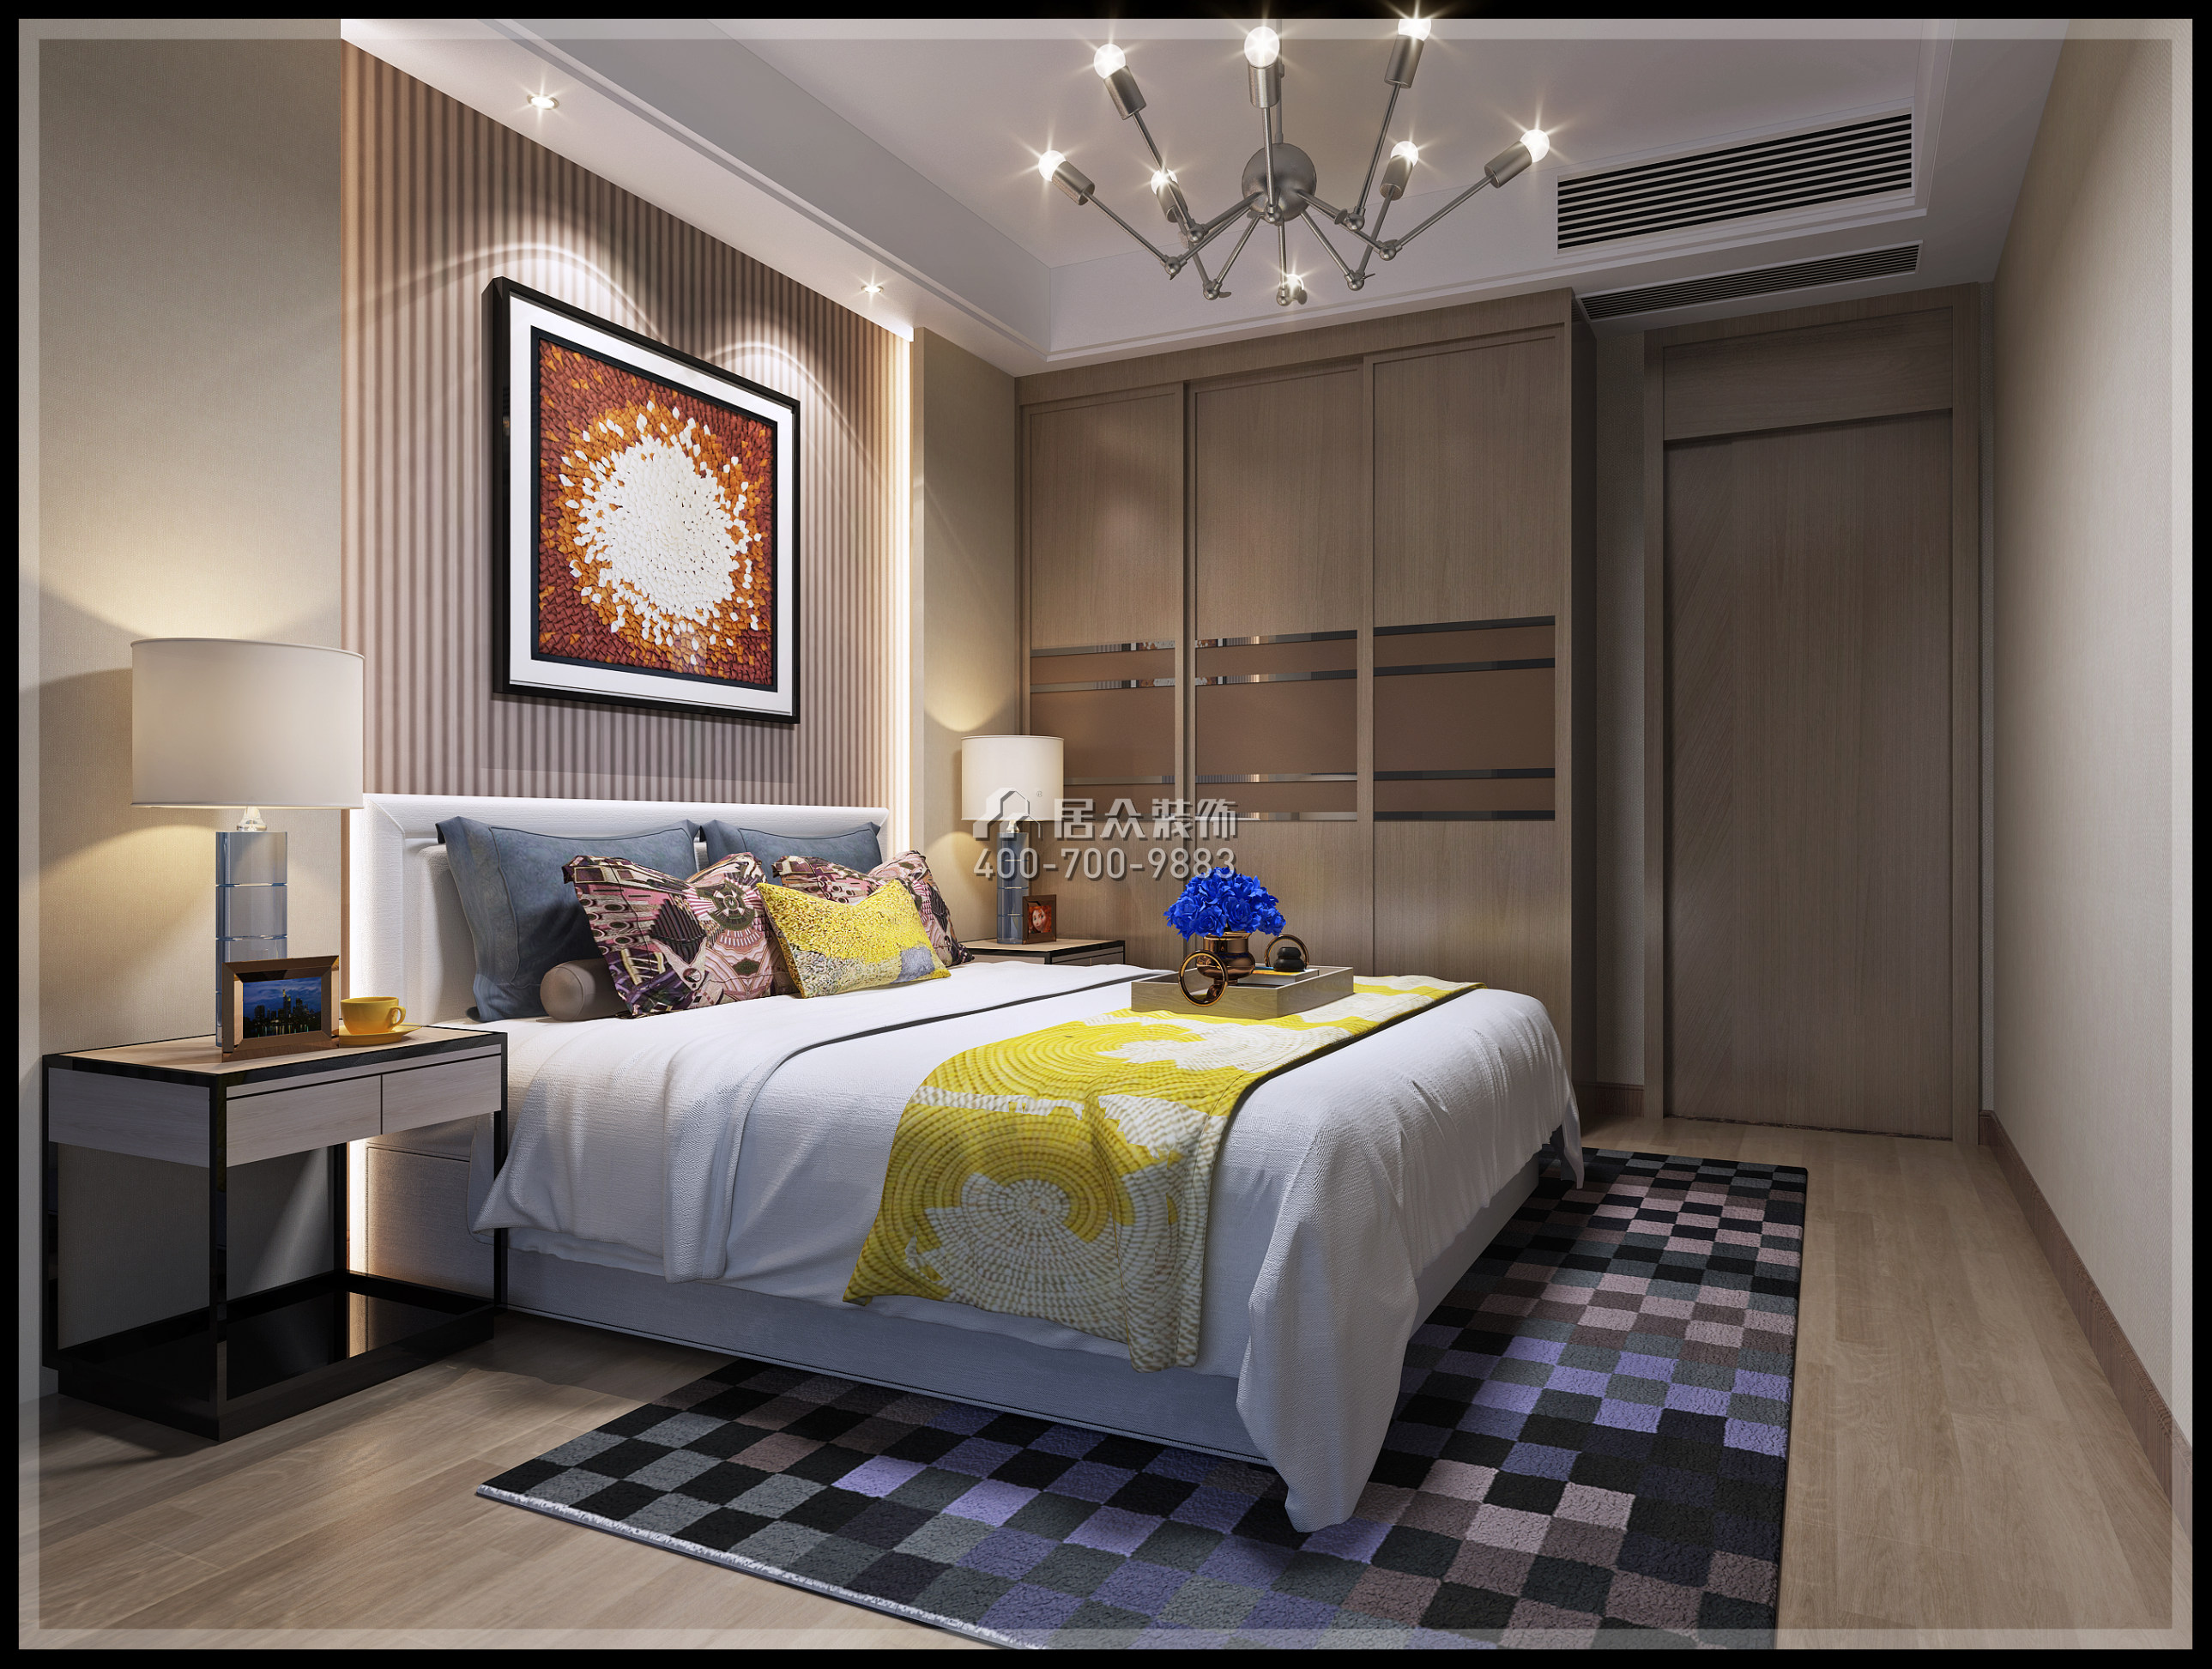 正兆景嘉园90平方米现代简约风格平层户型卧室装修效果图